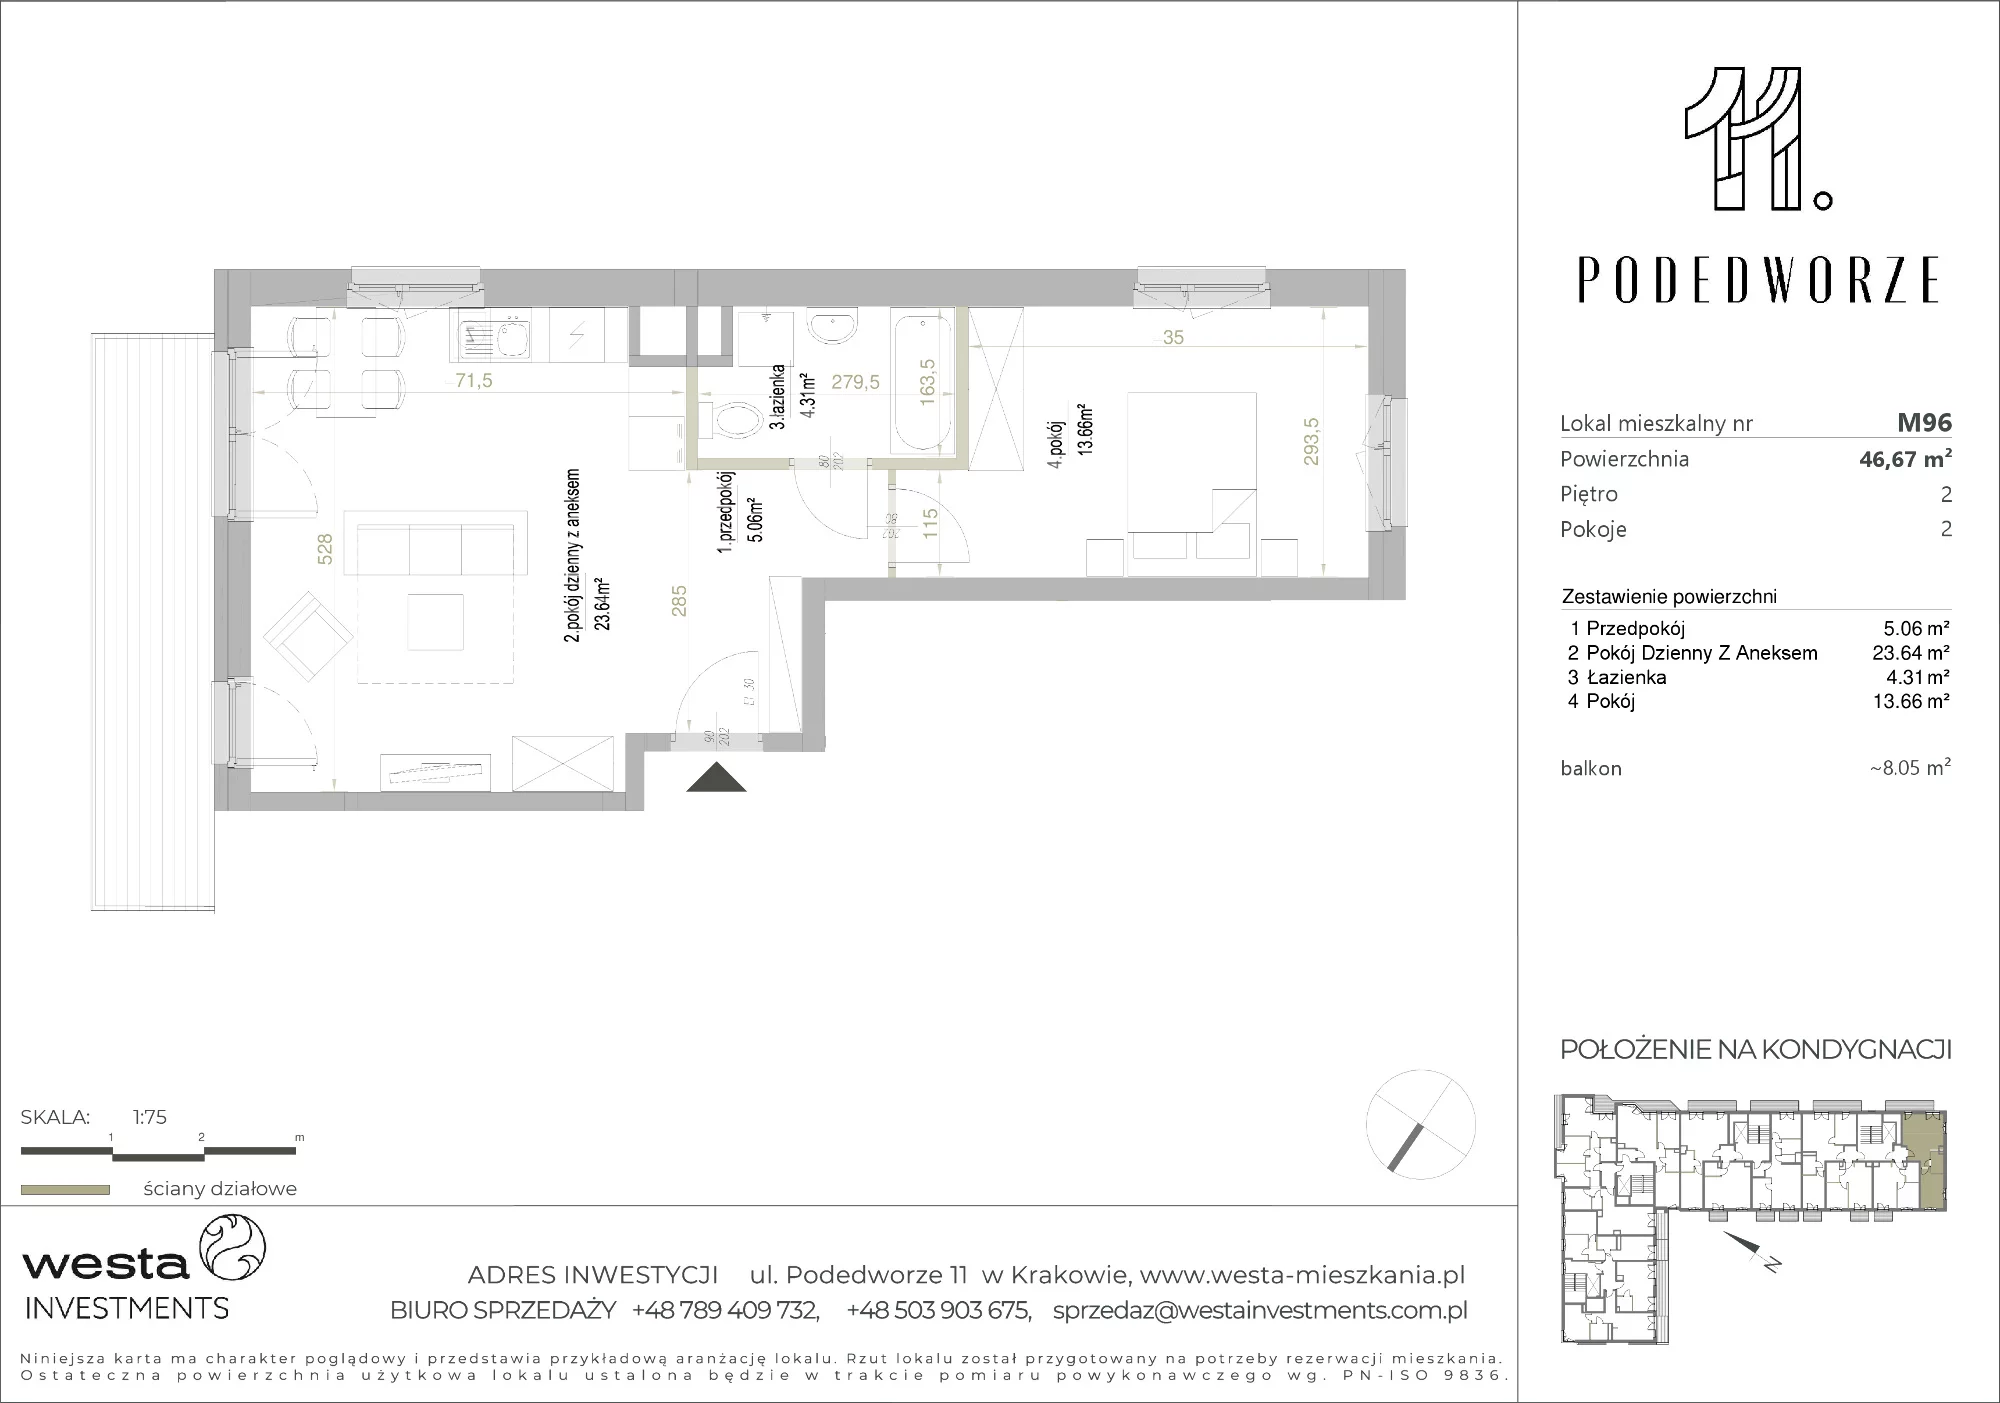 Mieszkanie 46,67 m², piętro 2, oferta nr 96, Podedworze 11, Kraków, Podgórze Duchackie, Piaski Wielkie, ul. Podedworze 11